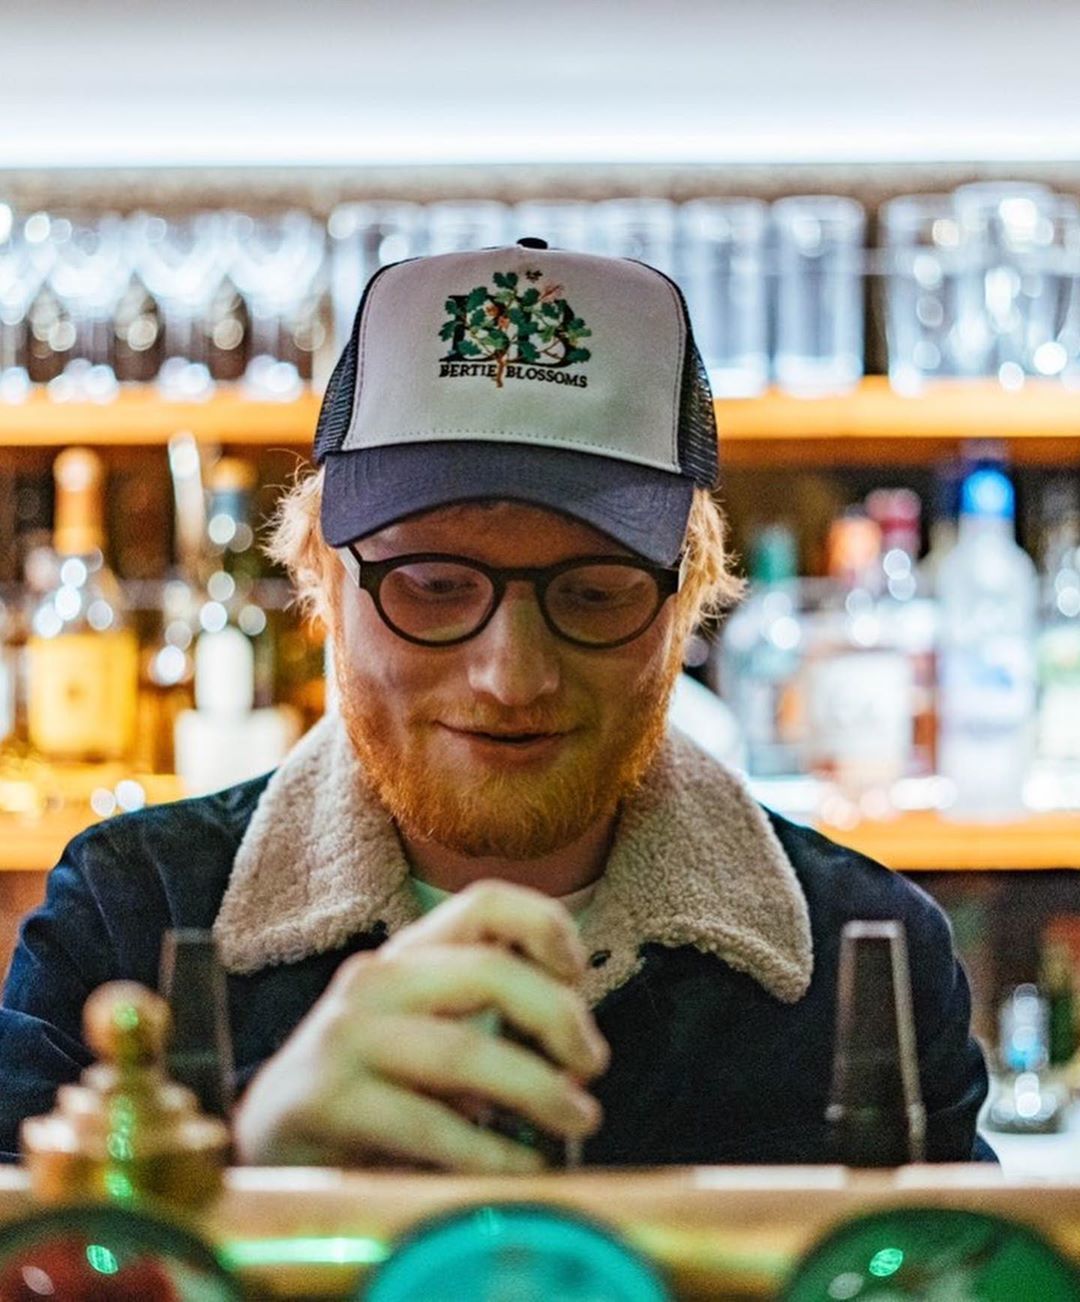 Ed Sheeran a jeho restaurace  Bertie Blossoms